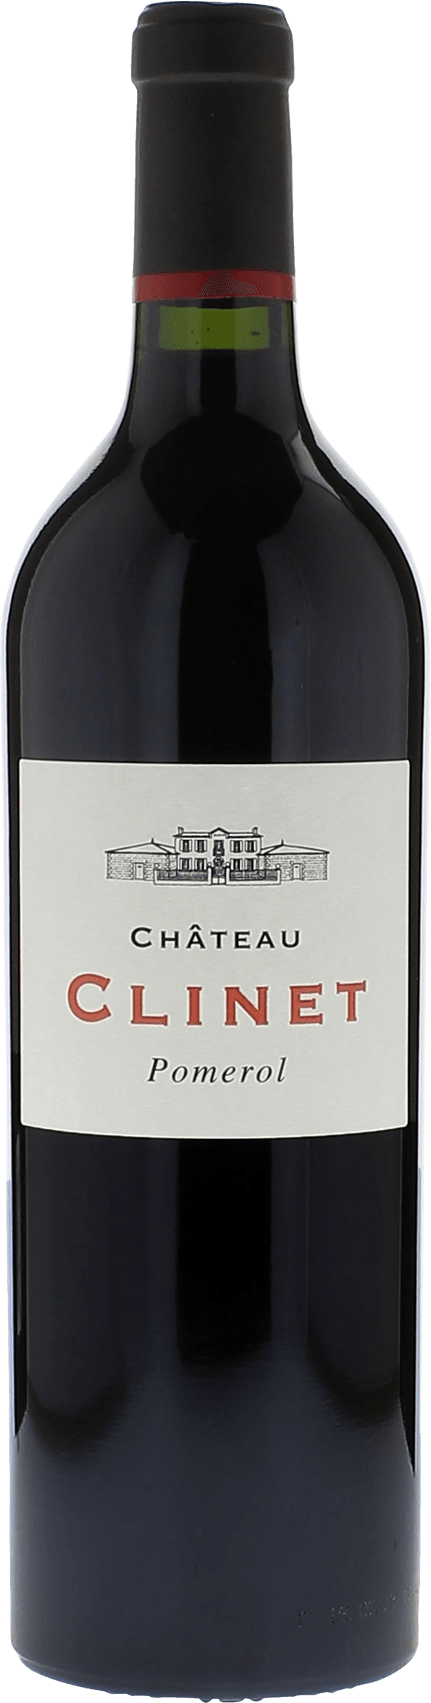 Clinet 1999  Pomerol, Bordeaux rouge